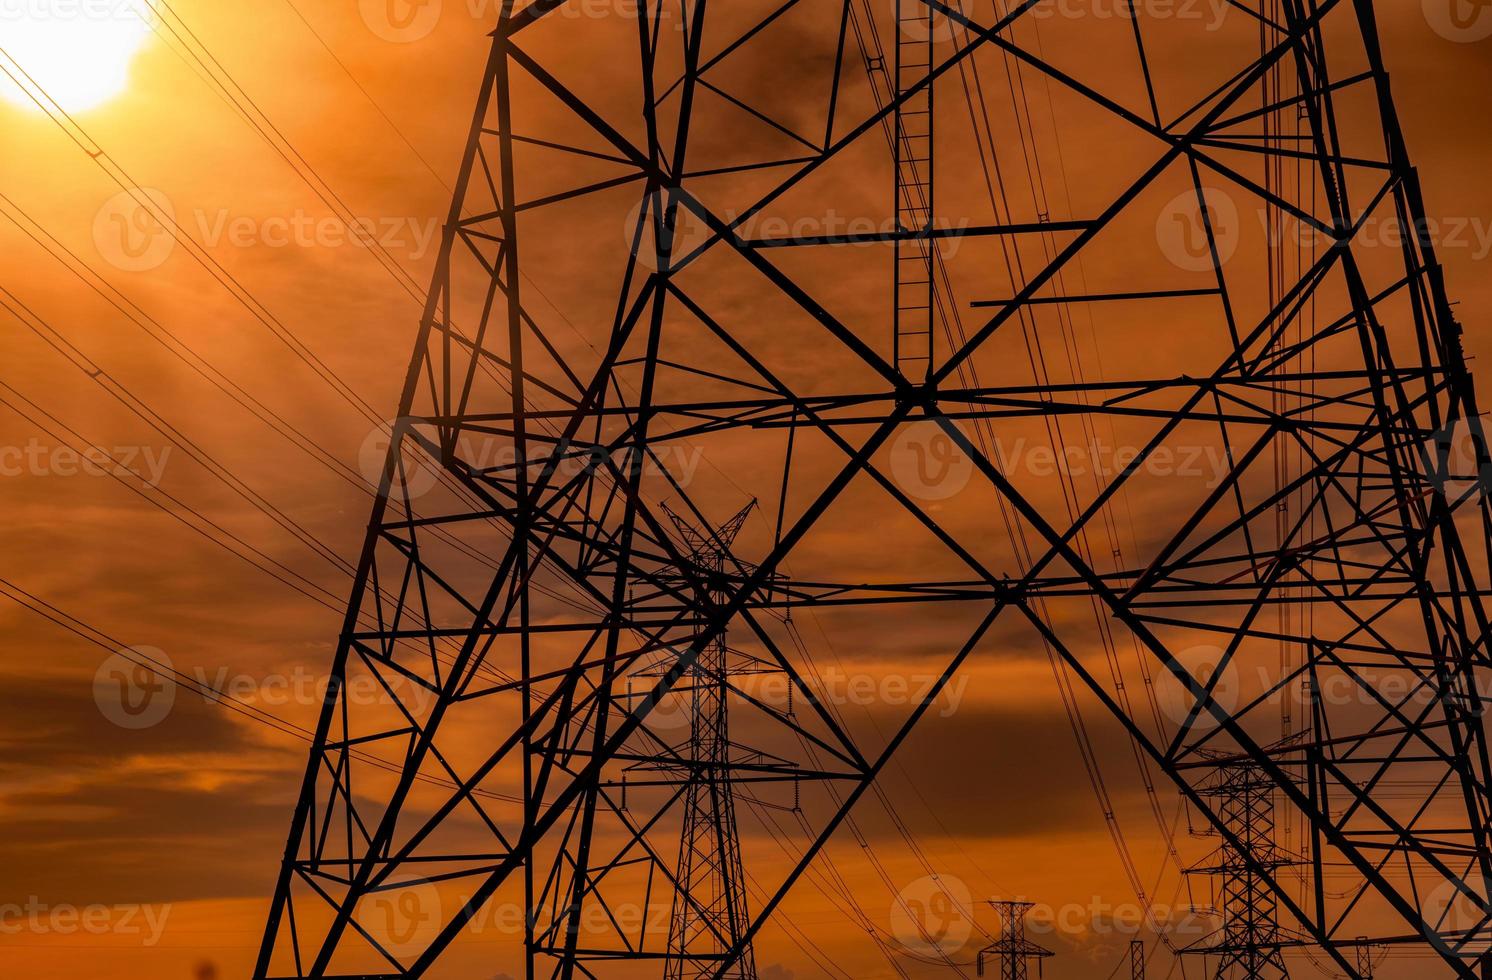 palo elettrico alta tensione e linee di trasmissione serali. tralicci elettrici al tramonto. potenza ed energia. conservazione dell'energia. torre della griglia ad alta tensione con cavo metallico alla stazione di distribuzione. foto